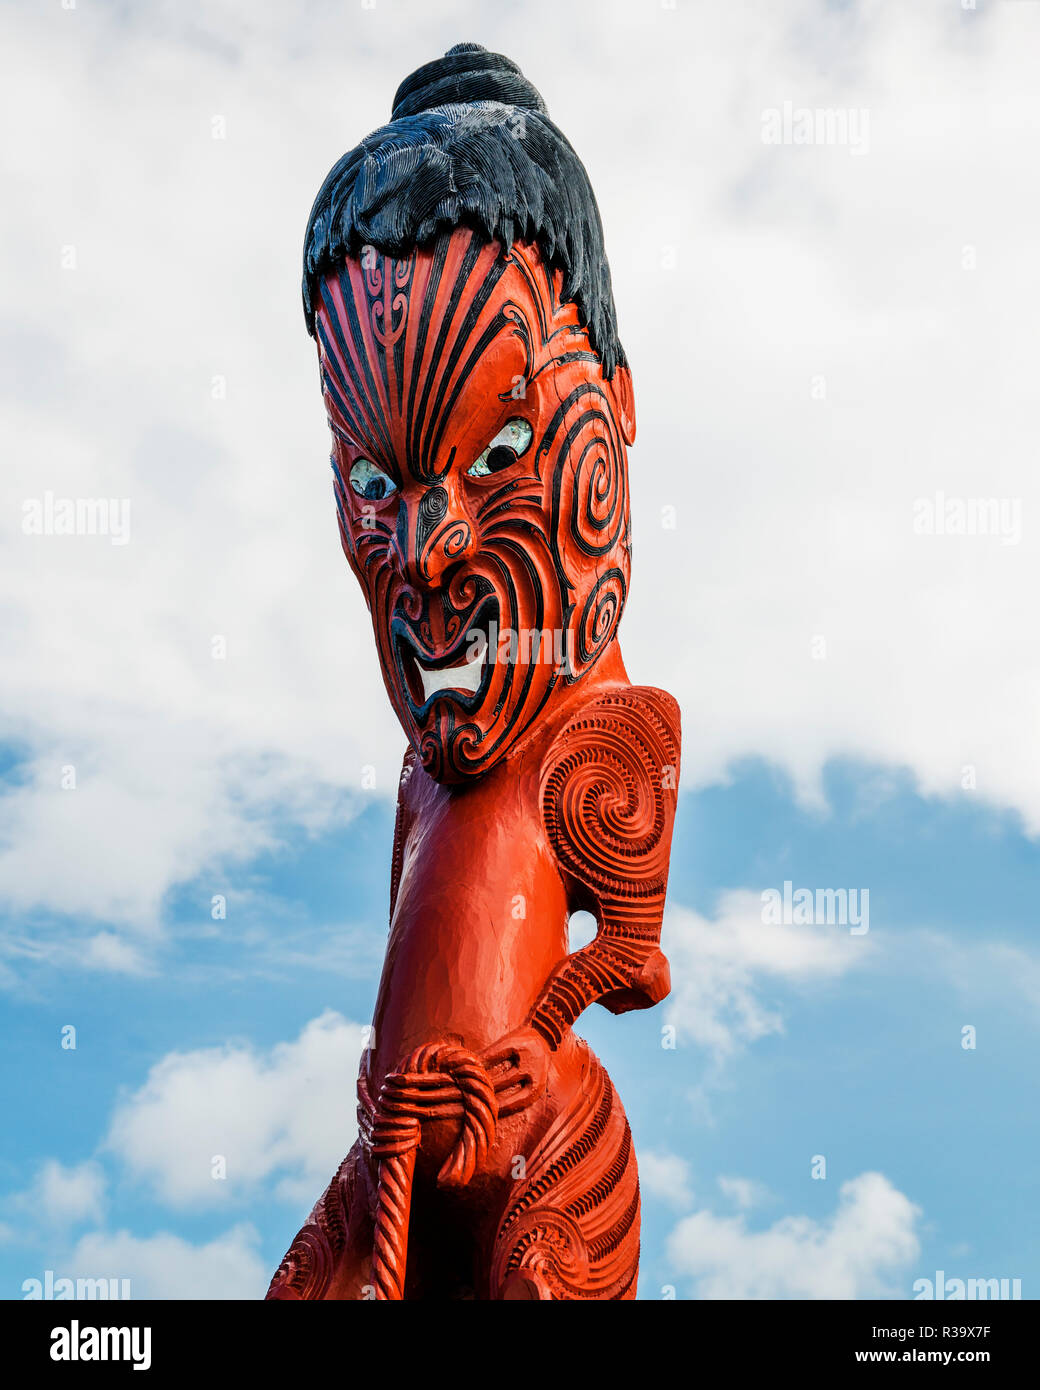 Sculpture traditionnel Maori, Nouvelle-Zélande Banque D'Images